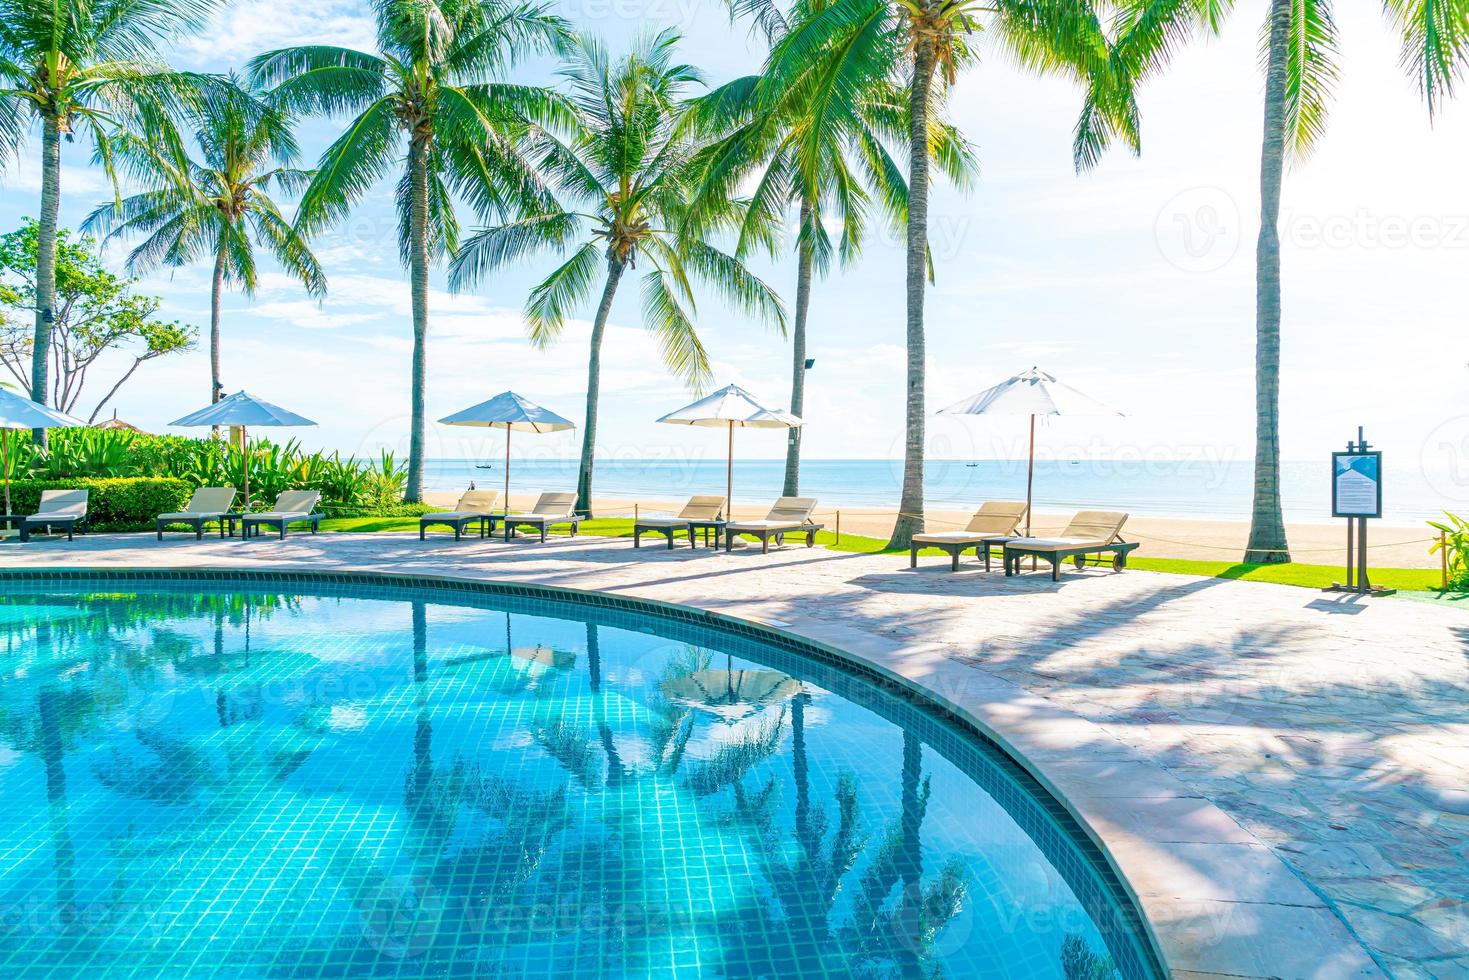 schöner Sonnenschirm und Stuhl um den Pool im Hotel und Resort? foto